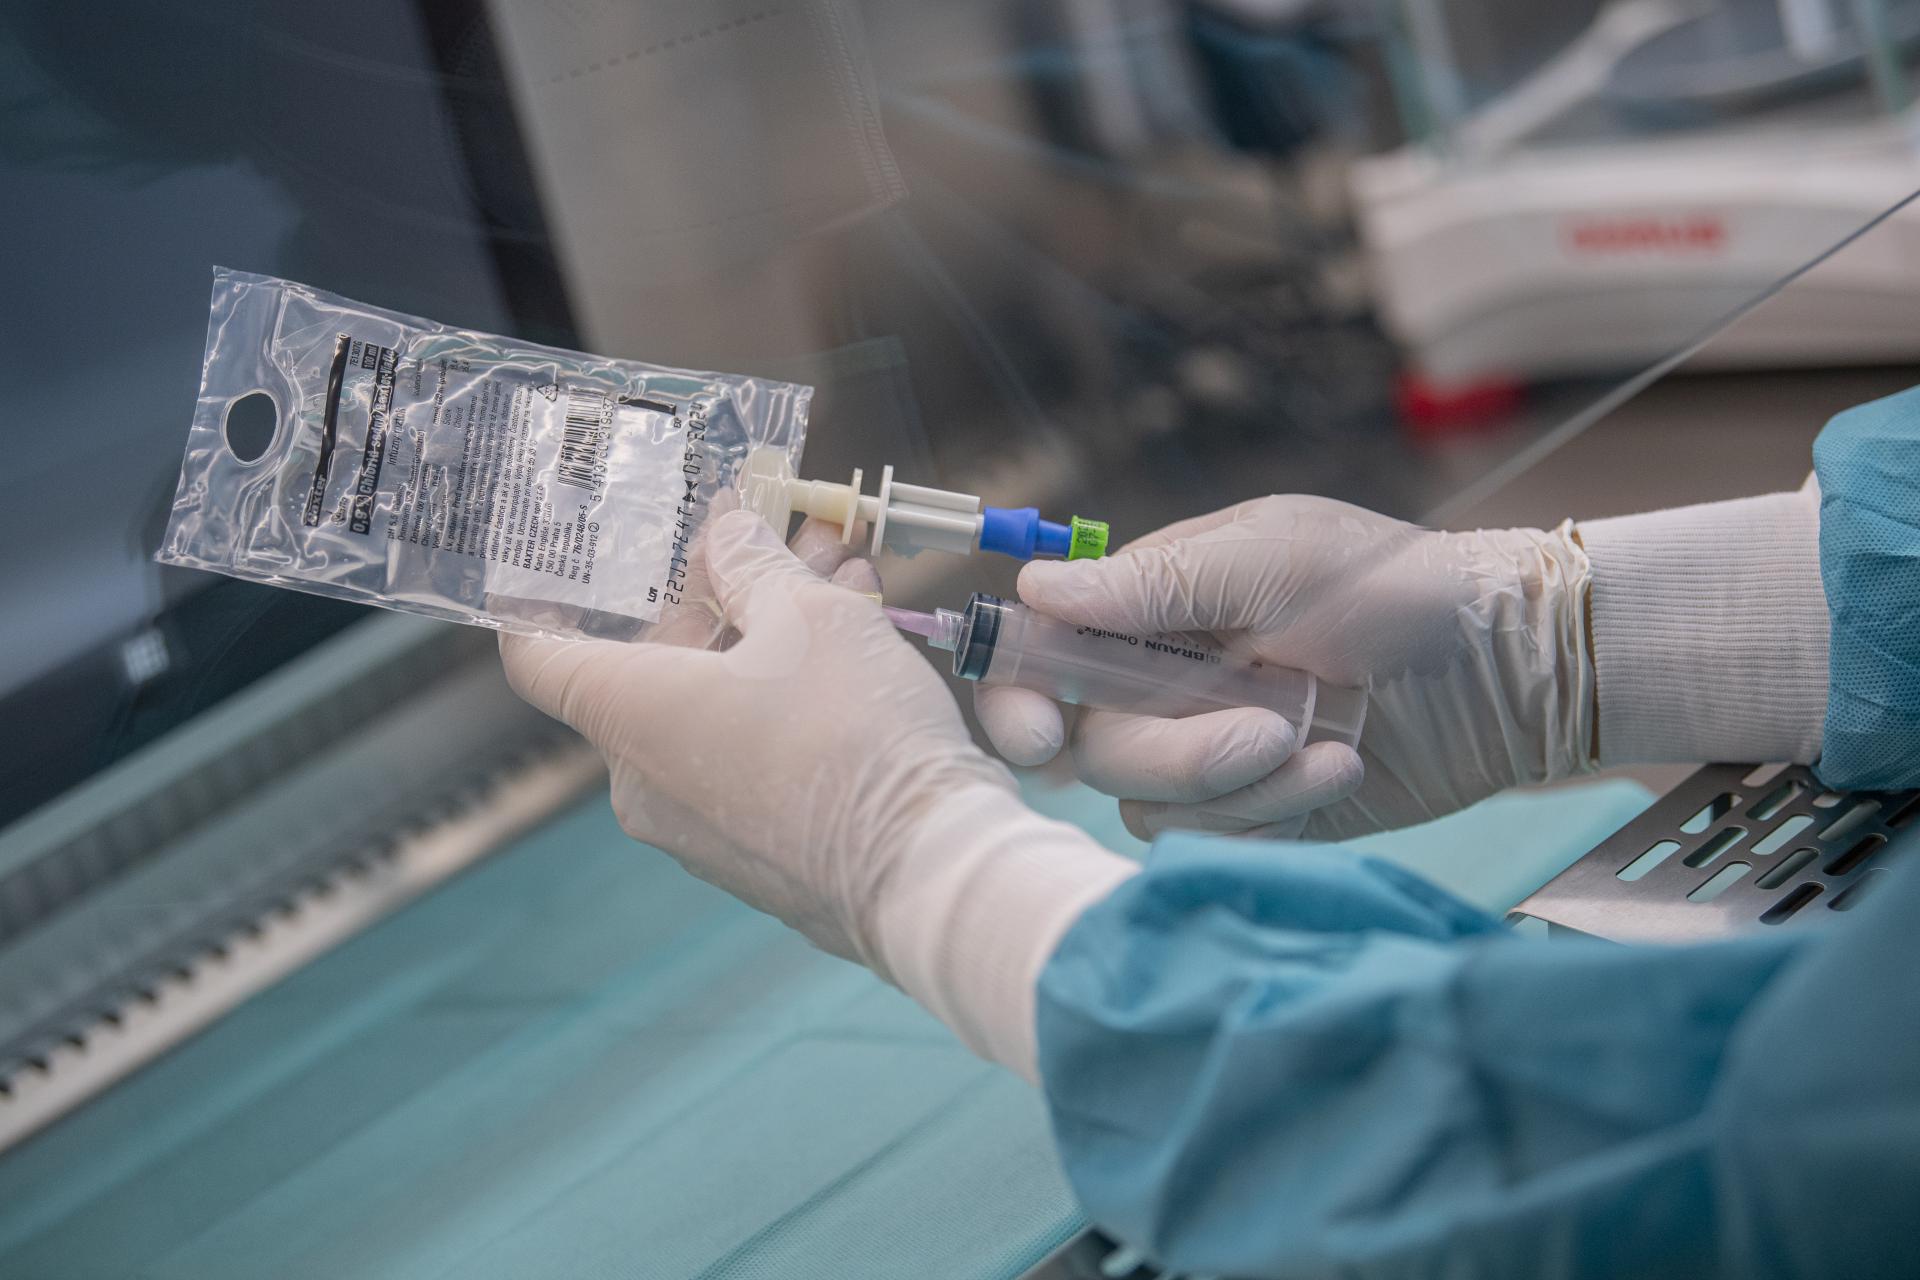 Rumunskí lekári čelia obvineniu, že používali implantáty vyňaté z mŕtvych pacientov